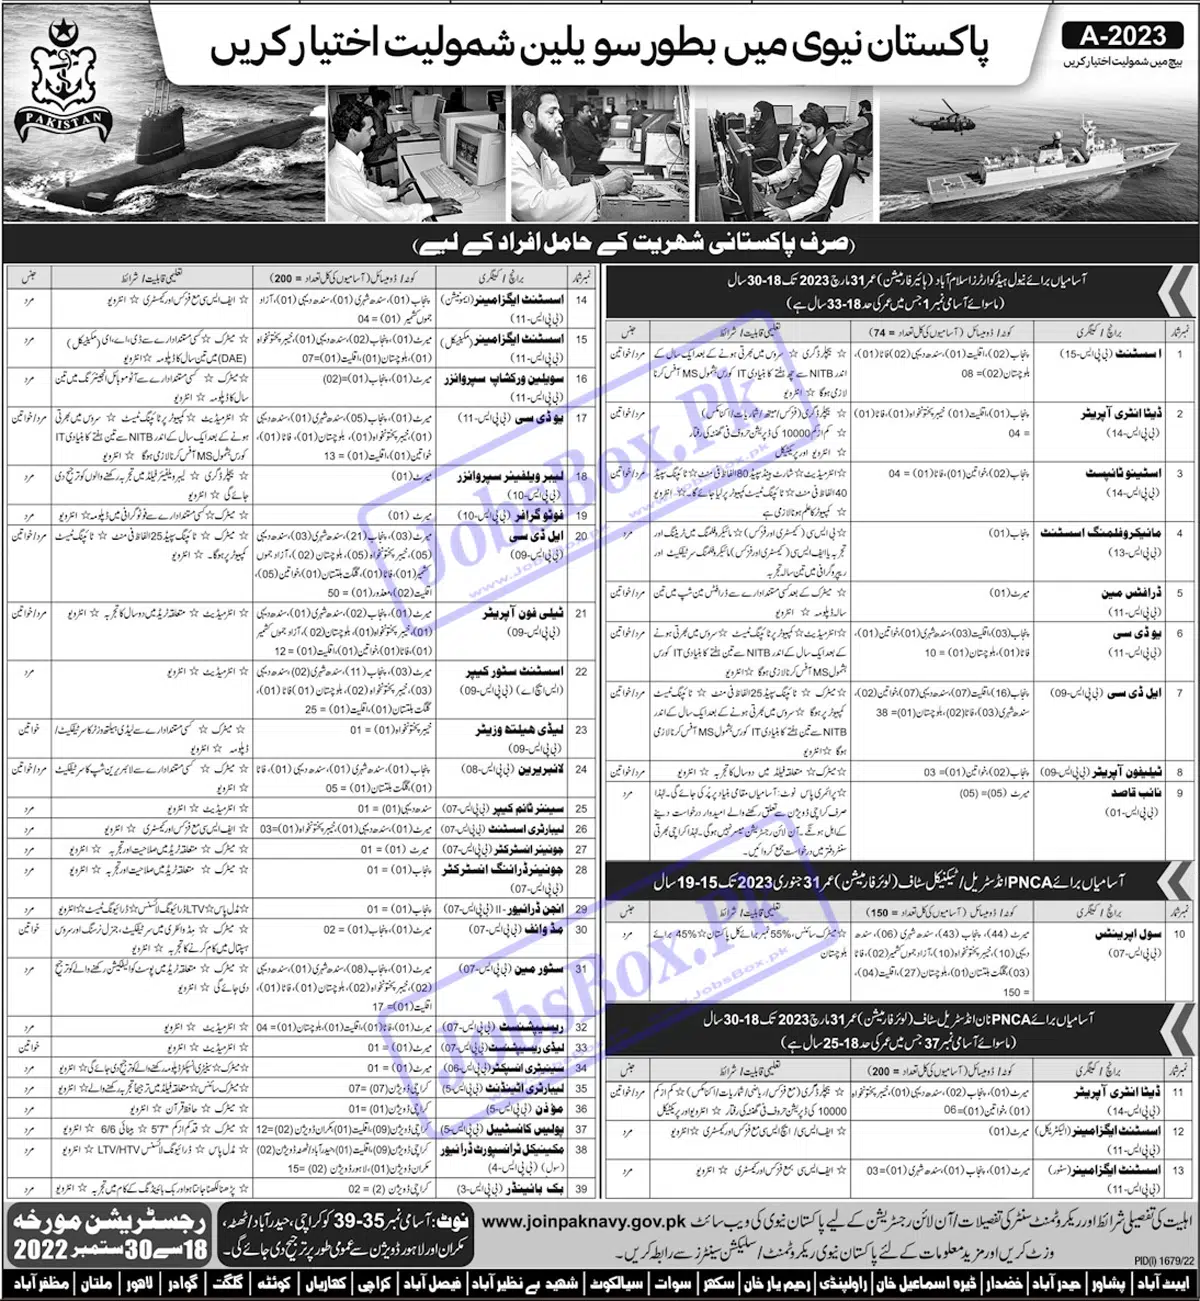 New Join Pakistan Navy Civilian Jobs 2022 Batch A-2023 Announcement